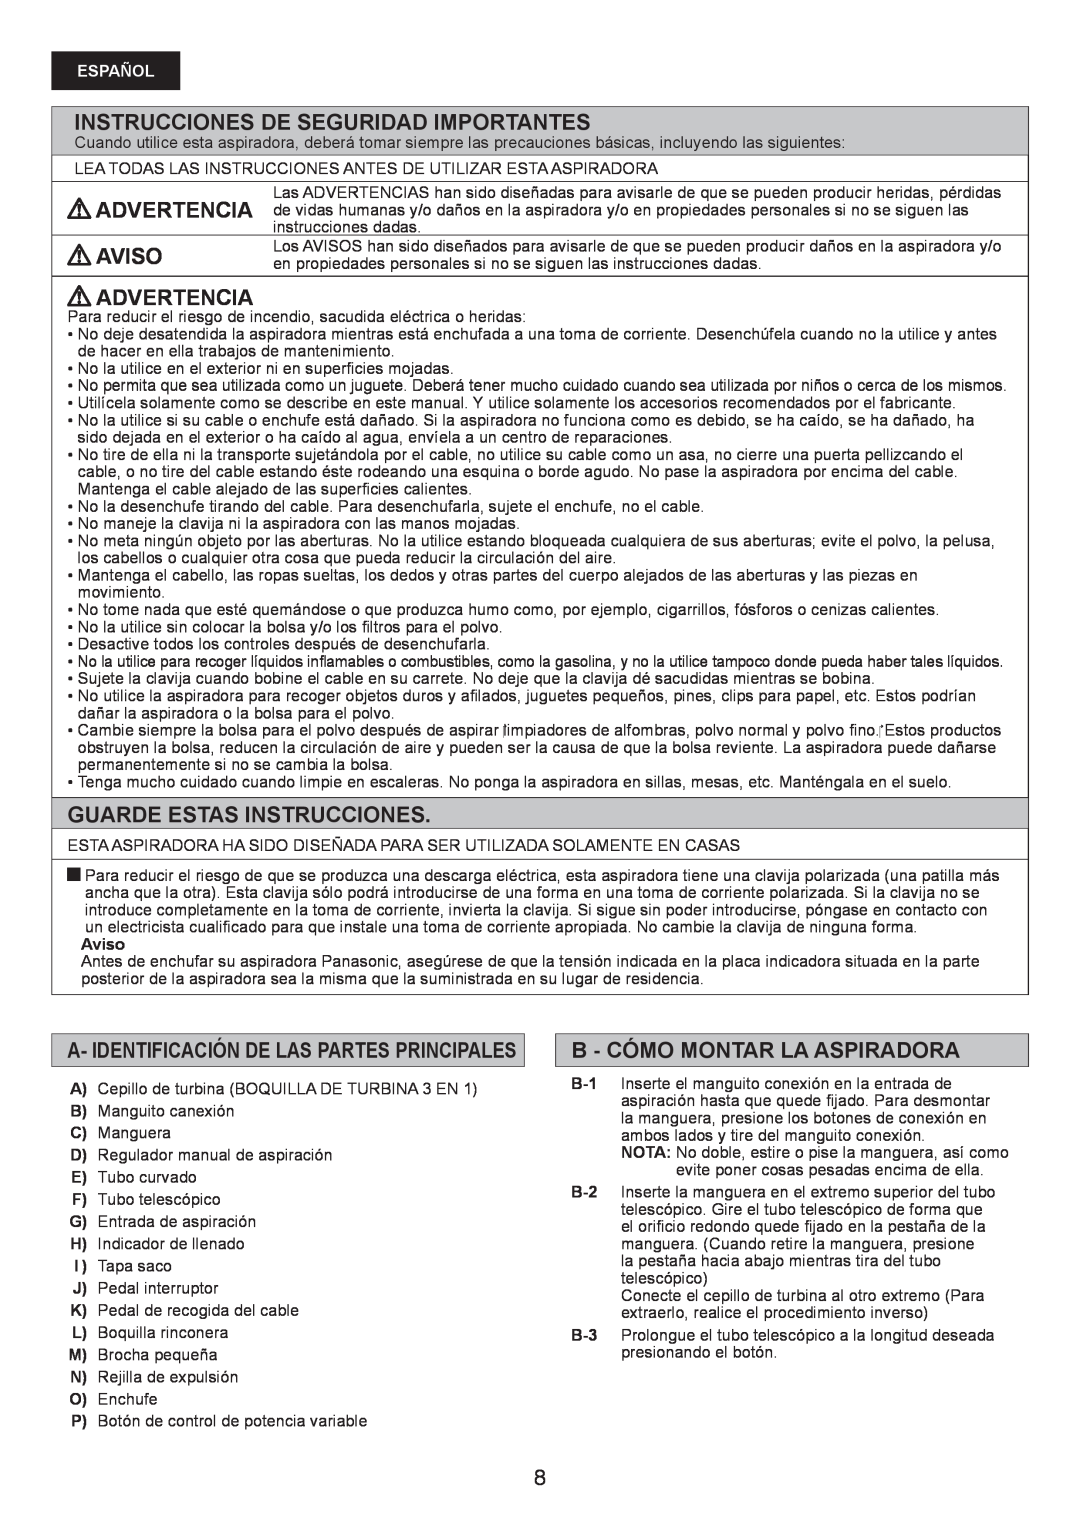 Panasonic MC-CG467 manual Instrucciones De Seguridad Importantes, Aviso Advertencia, Guarde Estas Instrucciones, Español 